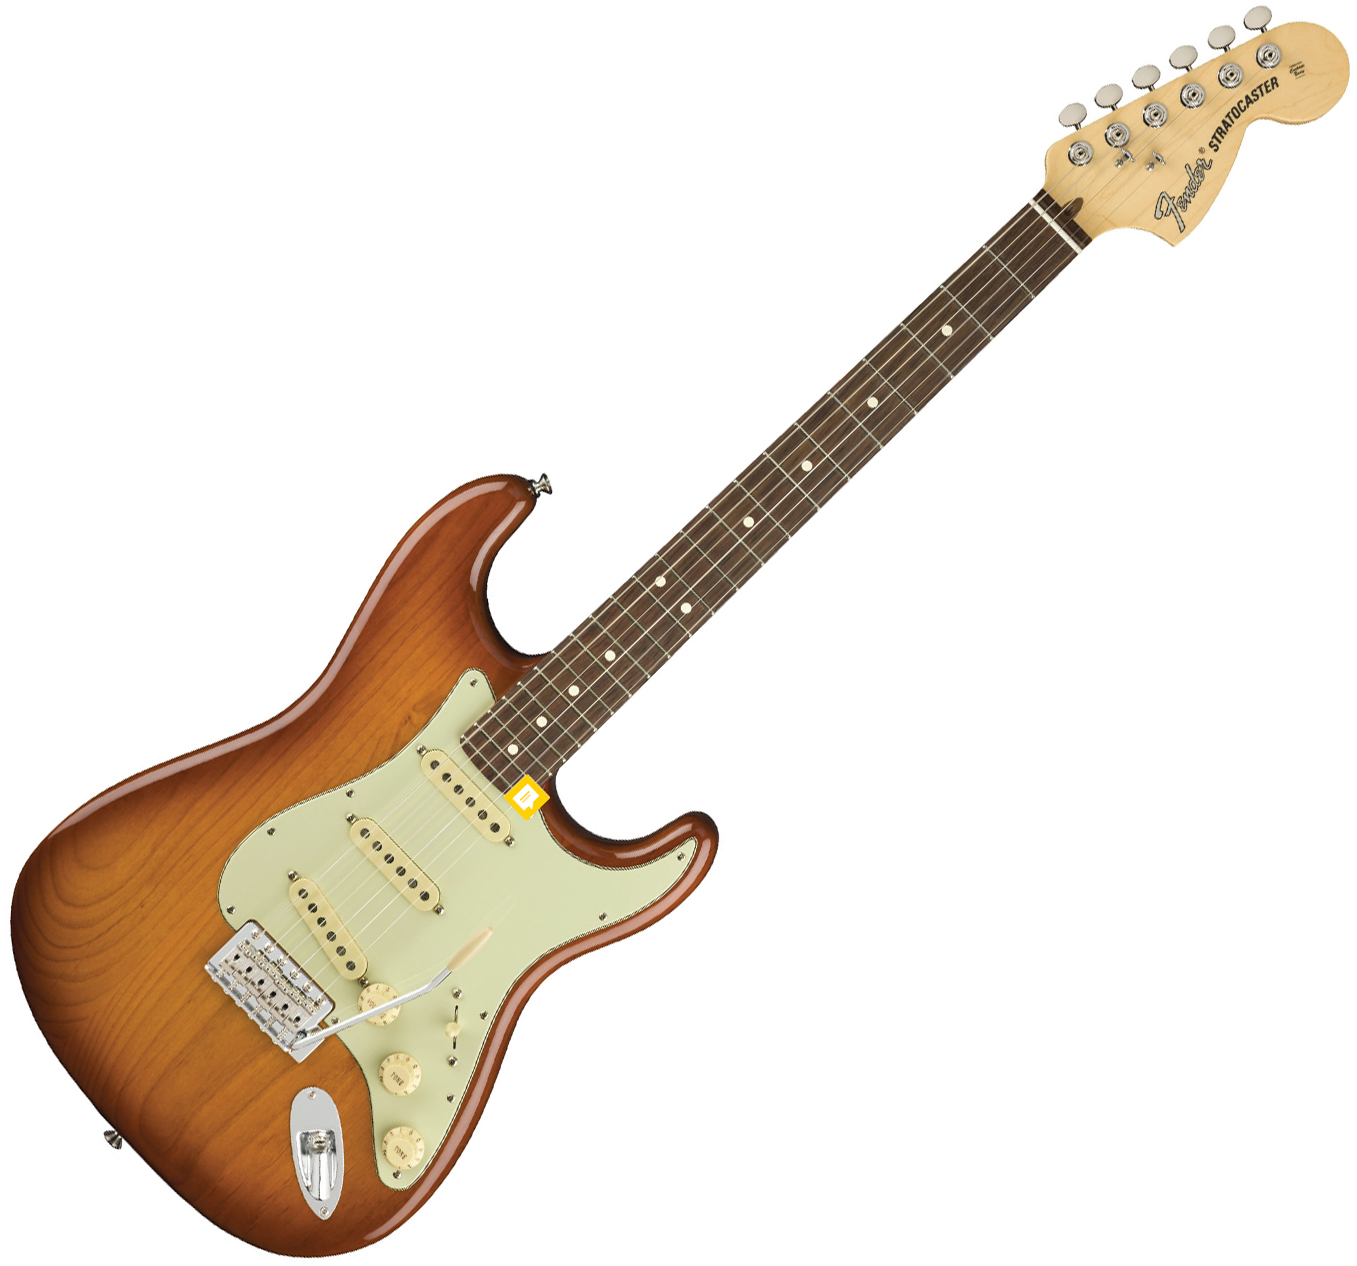 Fender Strat American Performer Usa Sss Rw - Honey Burst - Guitarra eléctrica con forma de str. - Variation 1